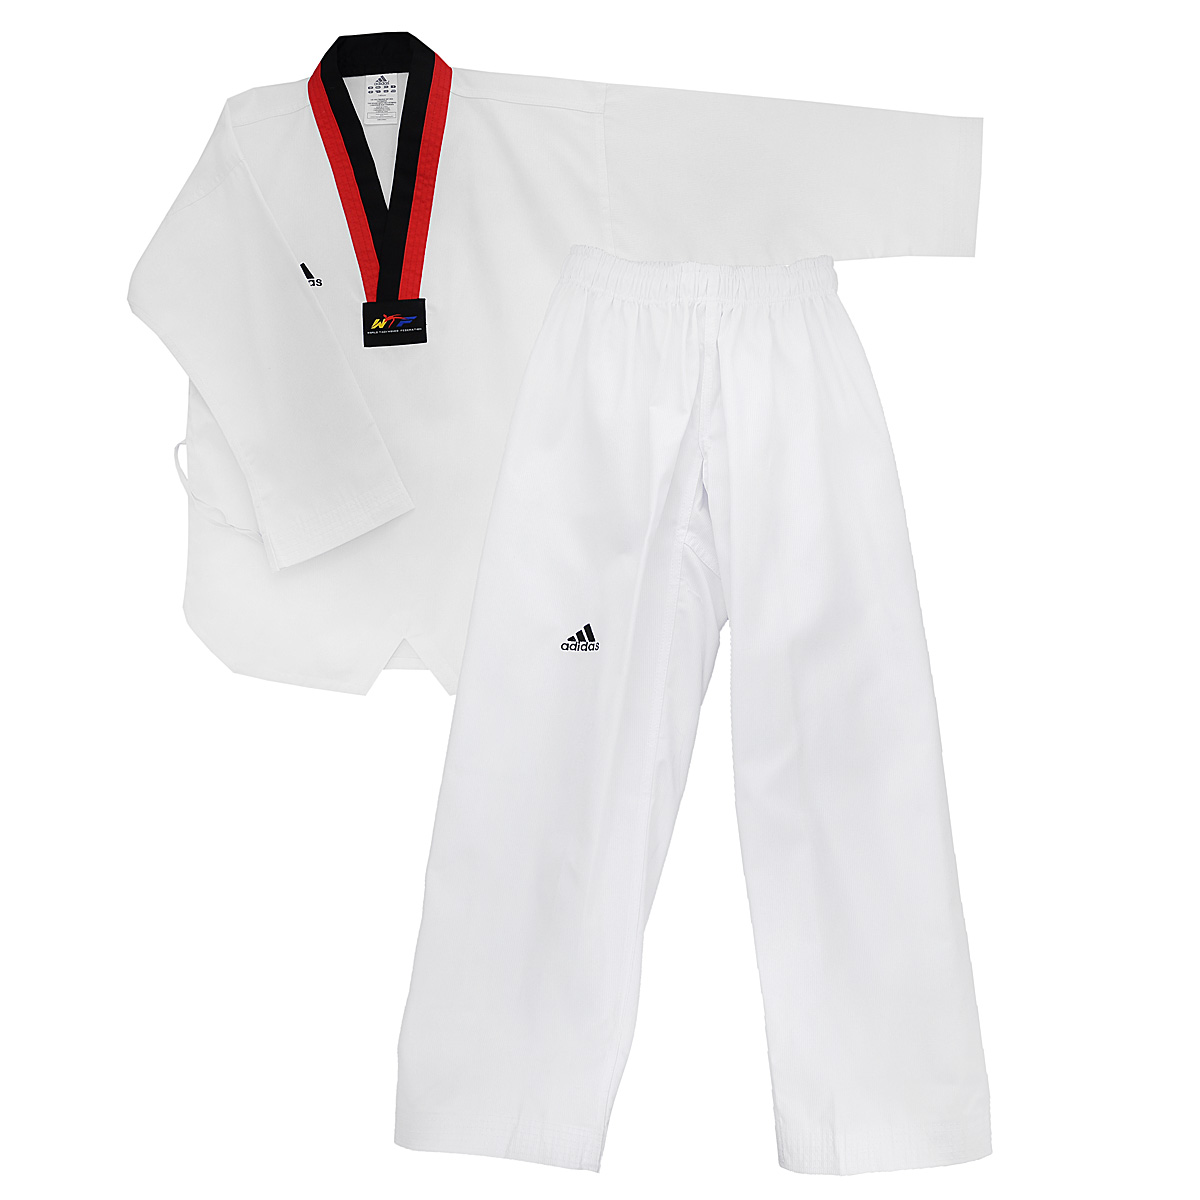 заказать и купить Кимоно для тхэквондо adidas Taekwondo Adi-Start, цвет: белый, черный, красный. adiTS01-WH/RD-BK. Размер 130